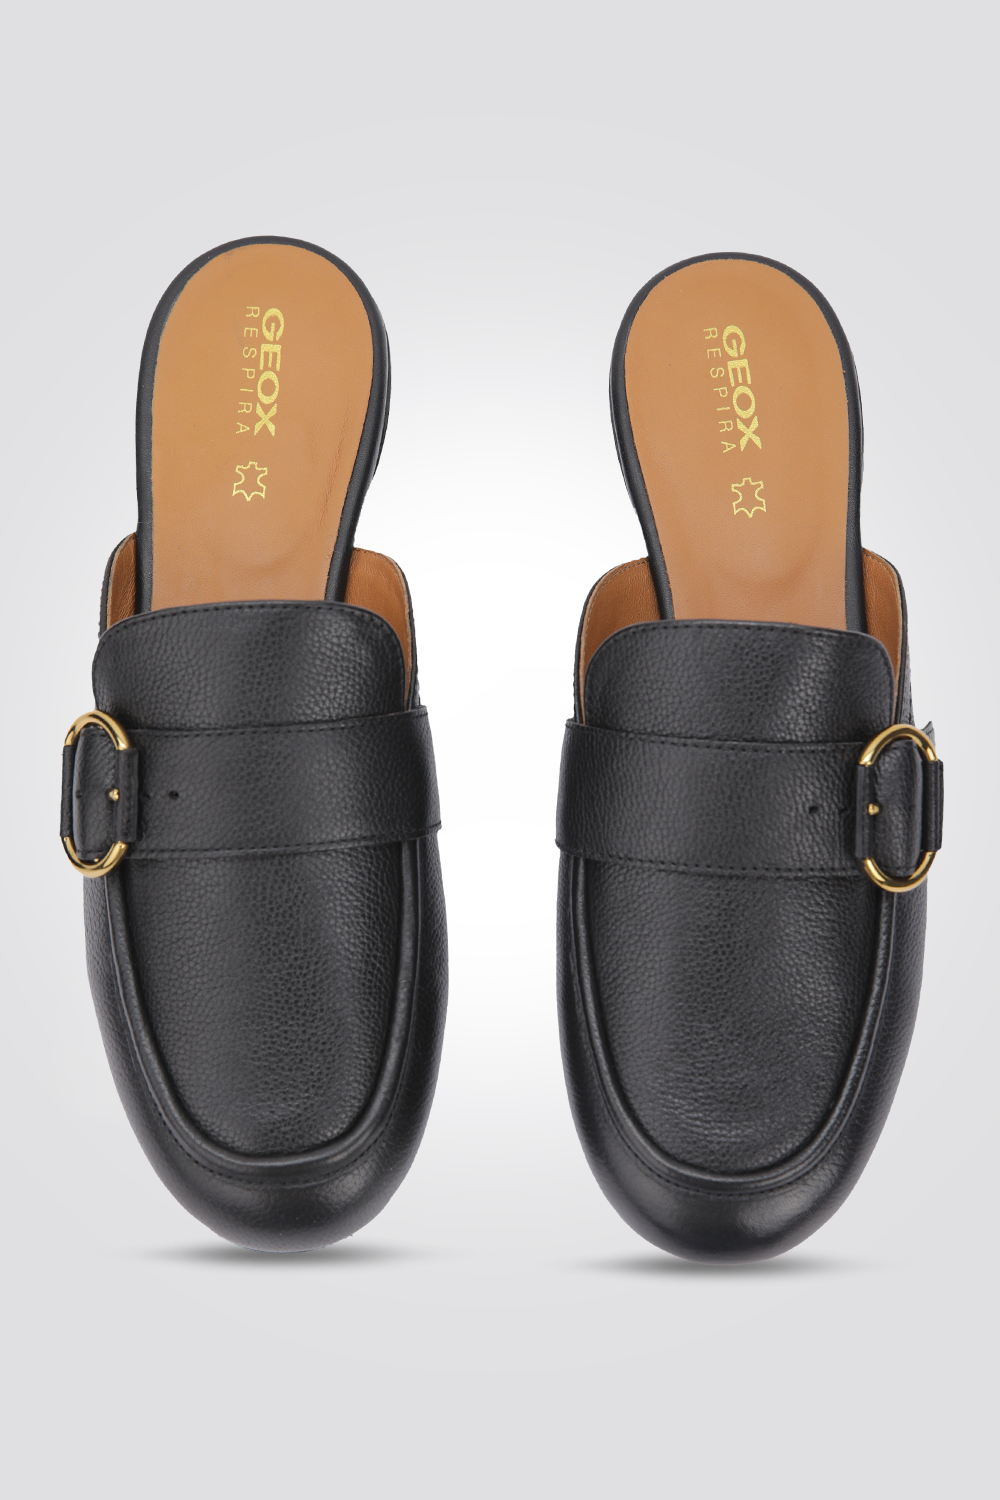 נעלי מוקסין לנשים Halbschuhe D Palmaria בצבע שחור